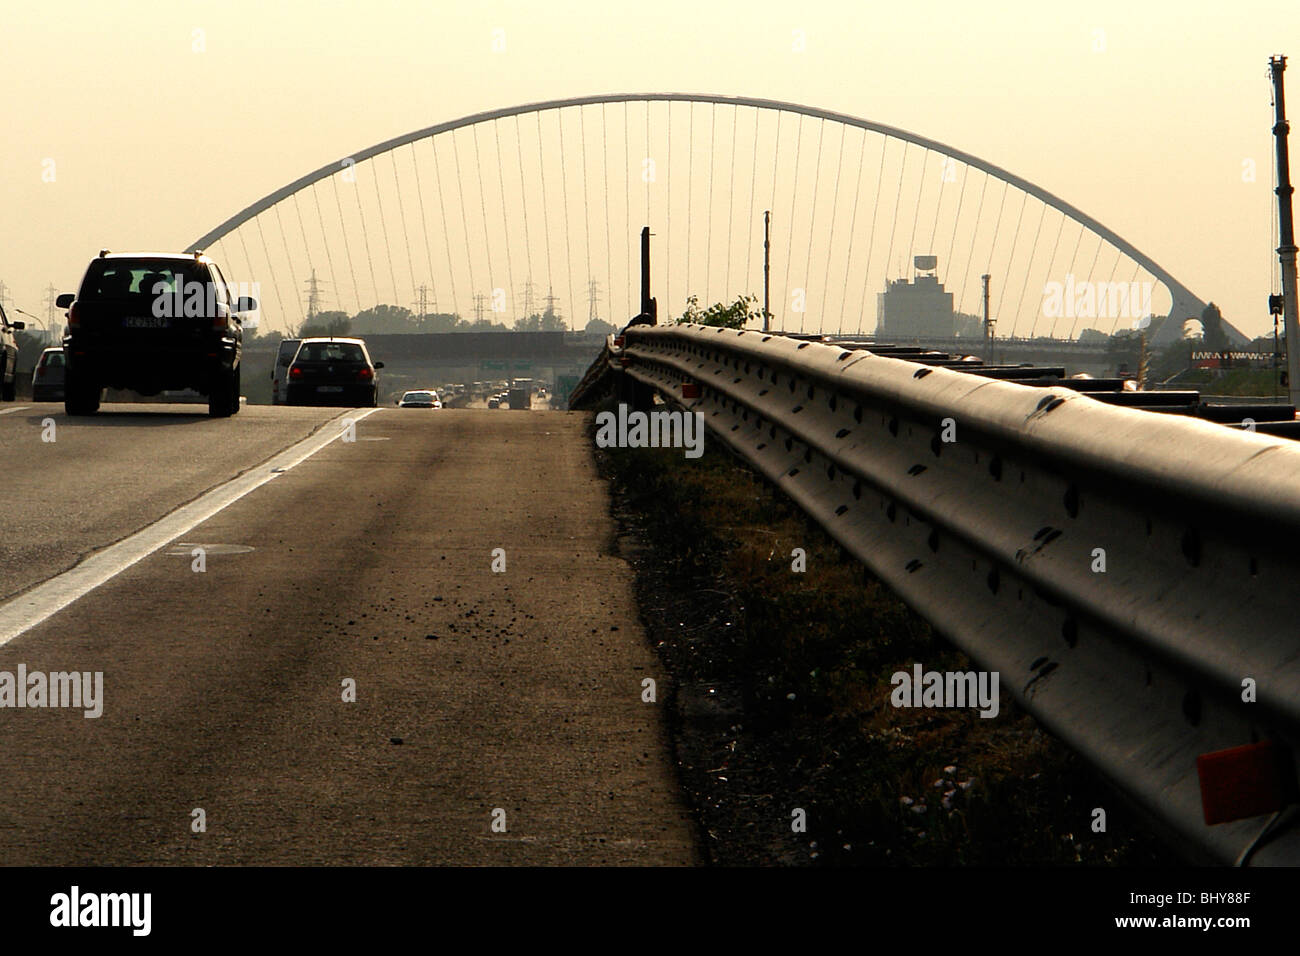 Italy, Emilia Romagna, Reggio Emilia, austostrada del sole (highway), Santiago Calatrava bridge Stock Photo